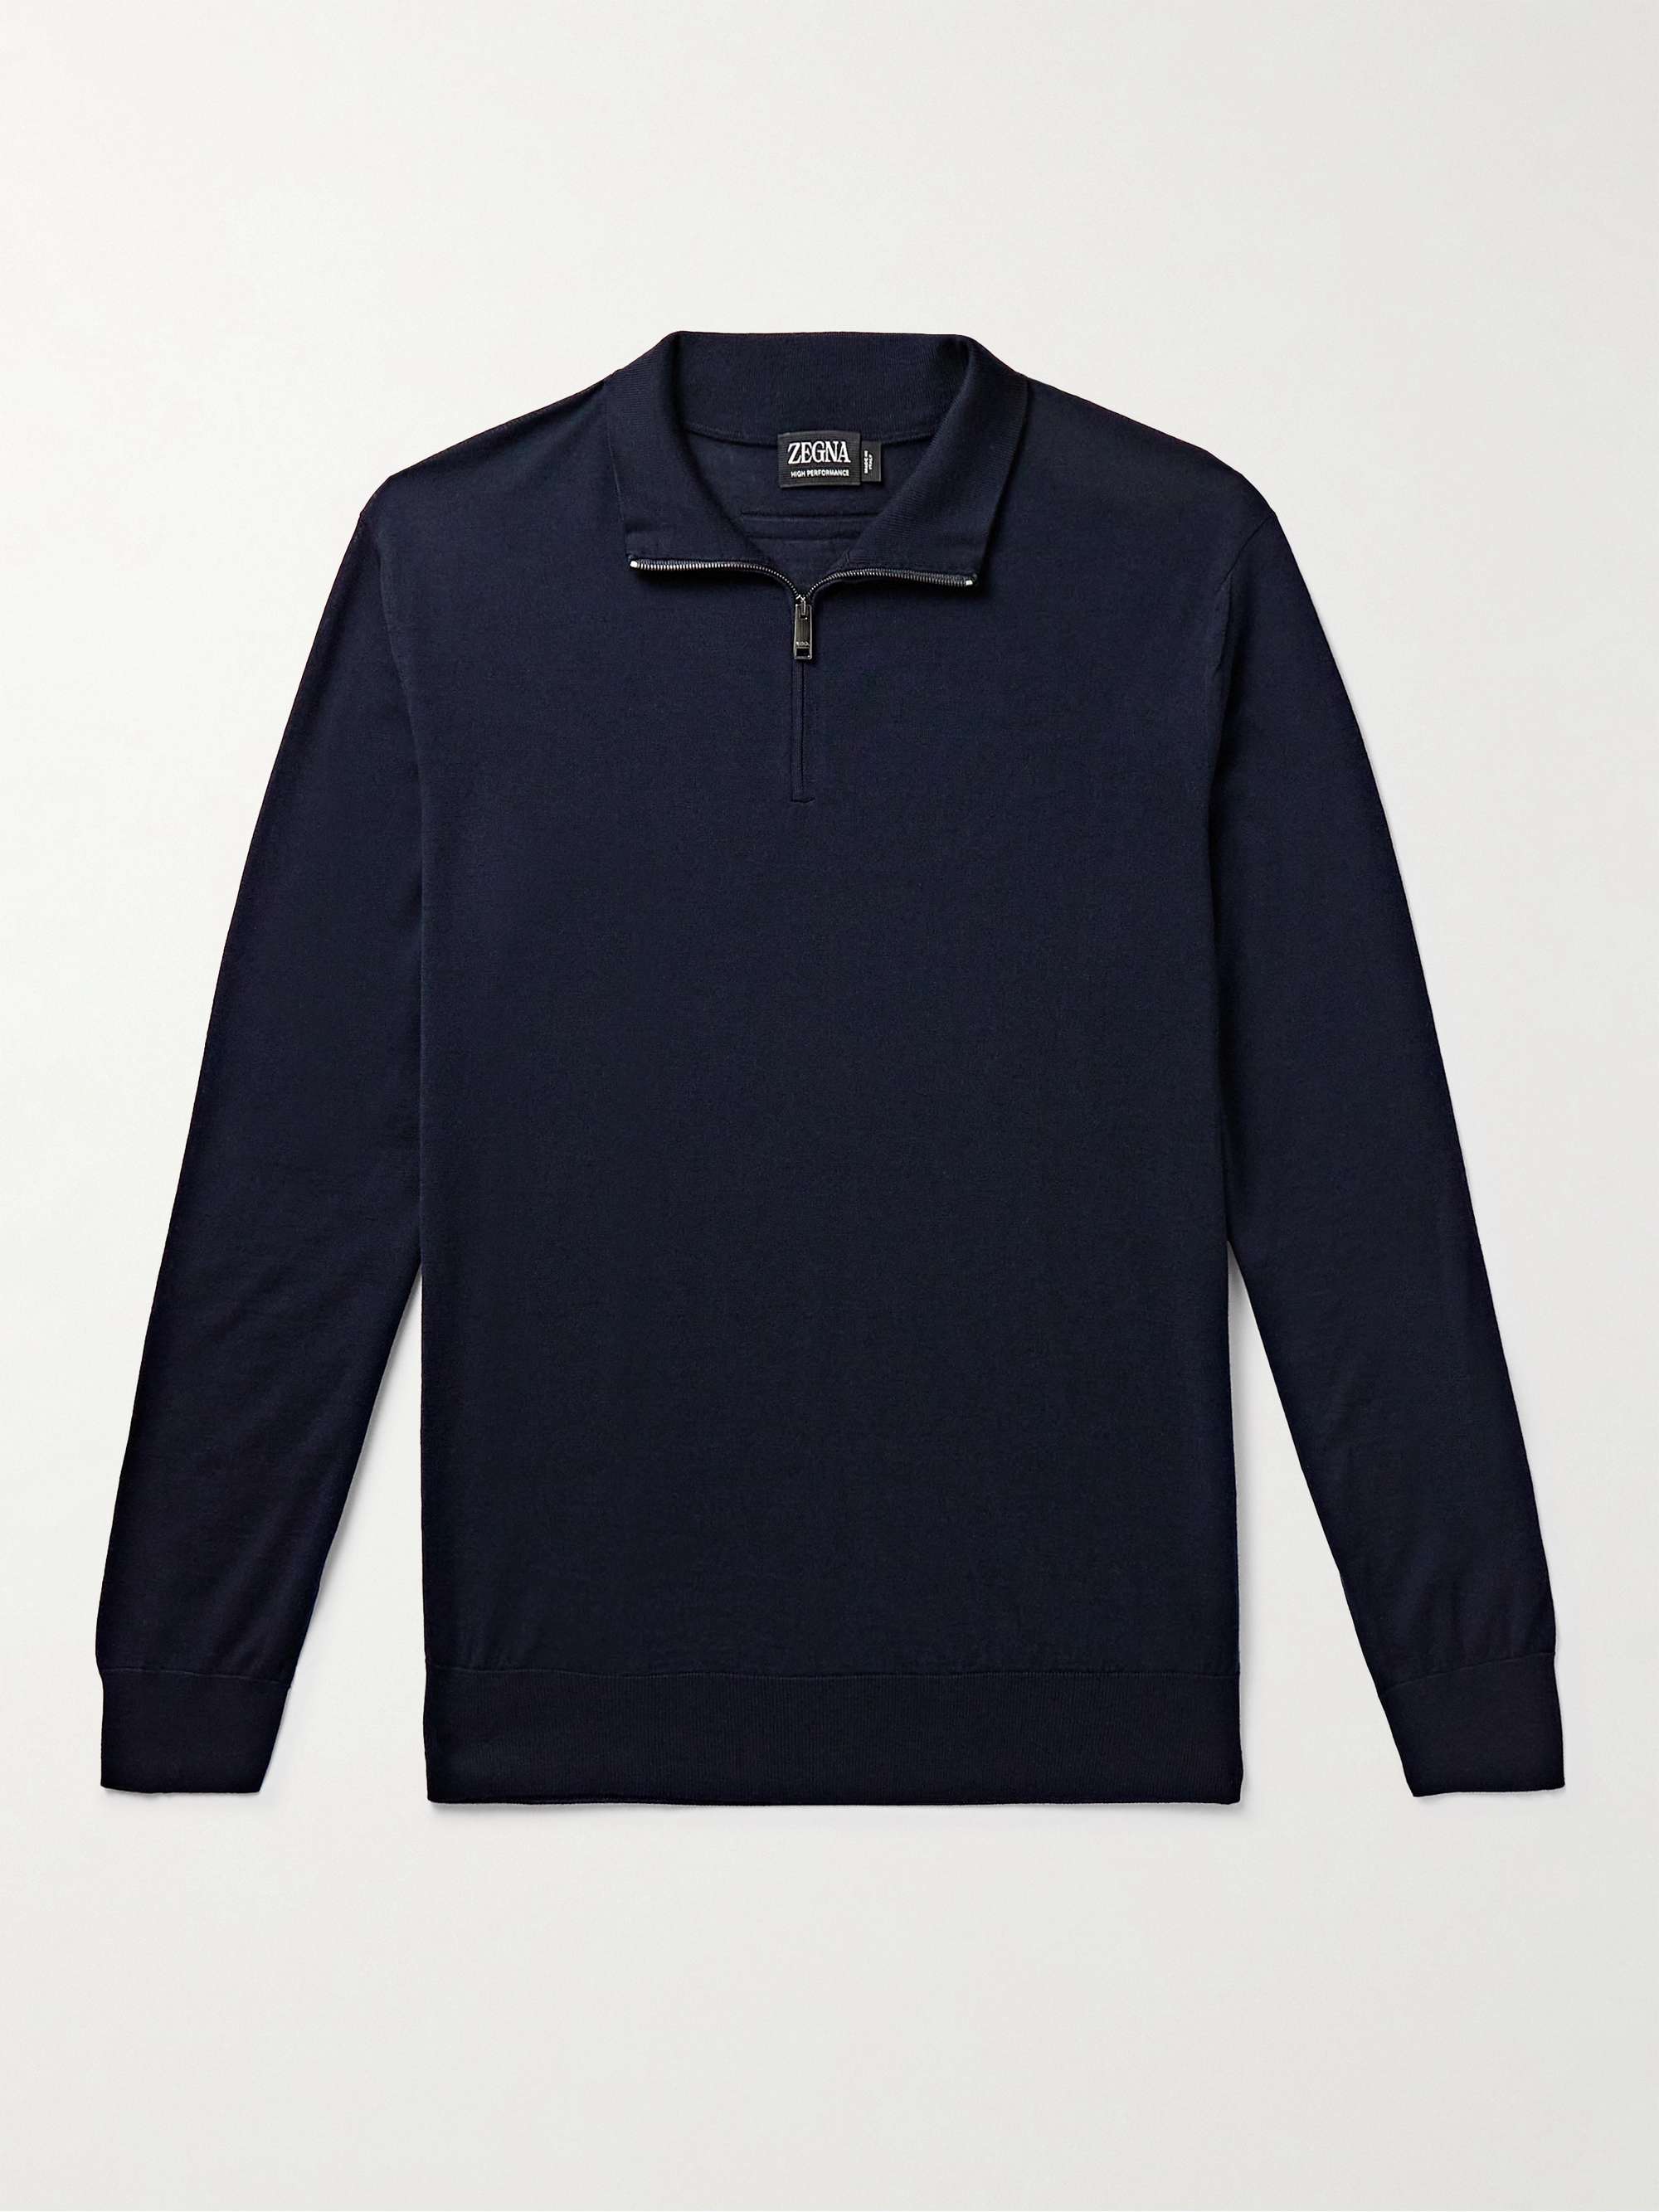 ZEGNA Slim-Fit Wool Half-Zip Sweater for Men | MR PORTER